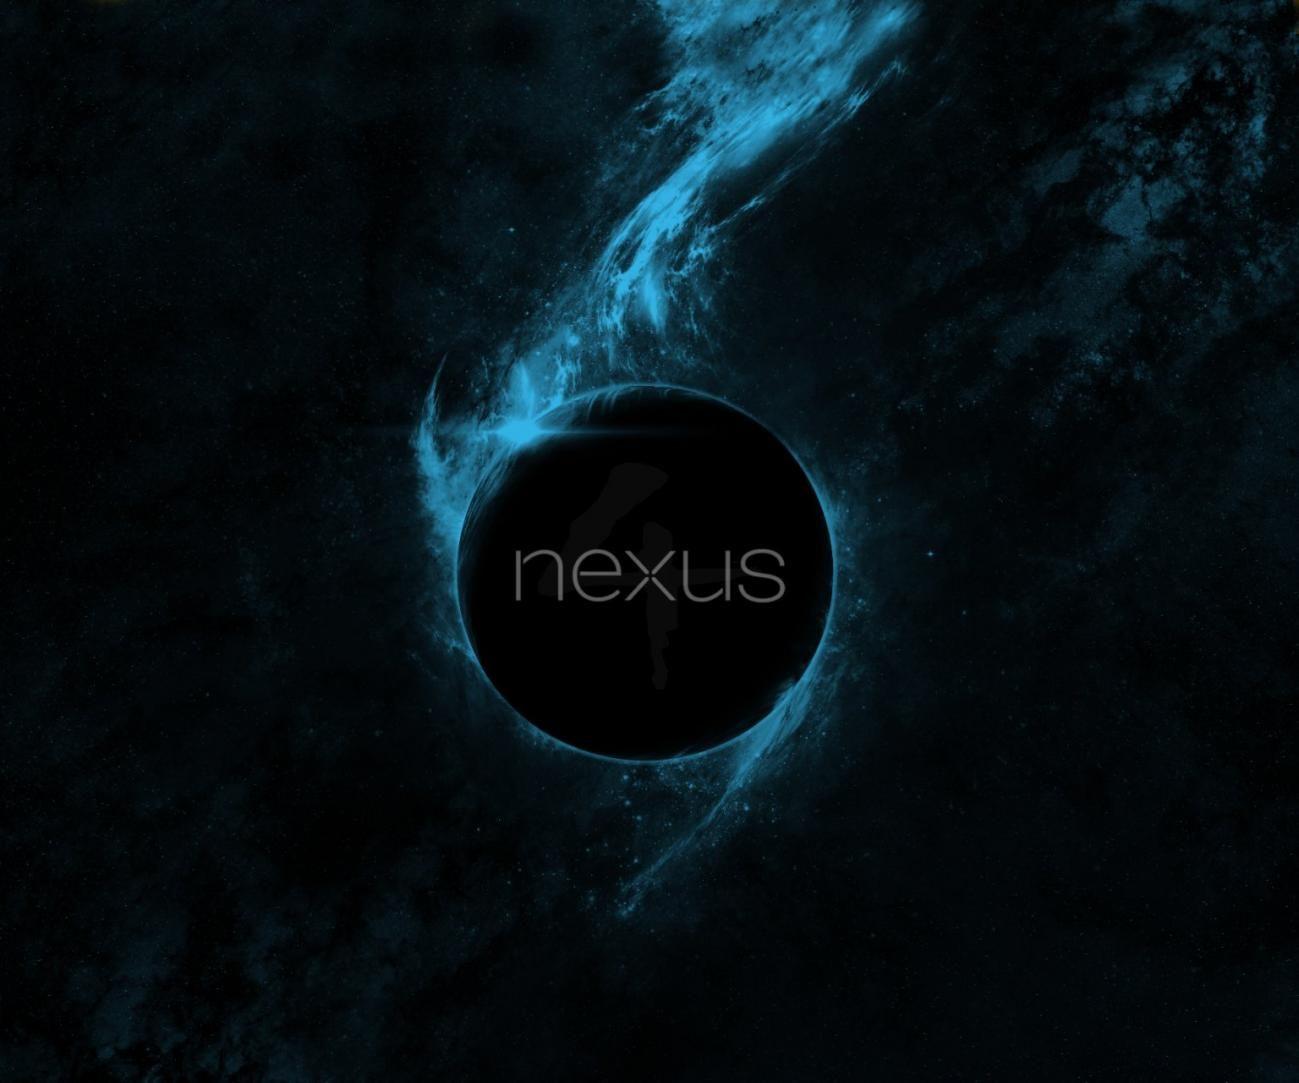 HD nexus 5 wallpapers | Peakpx